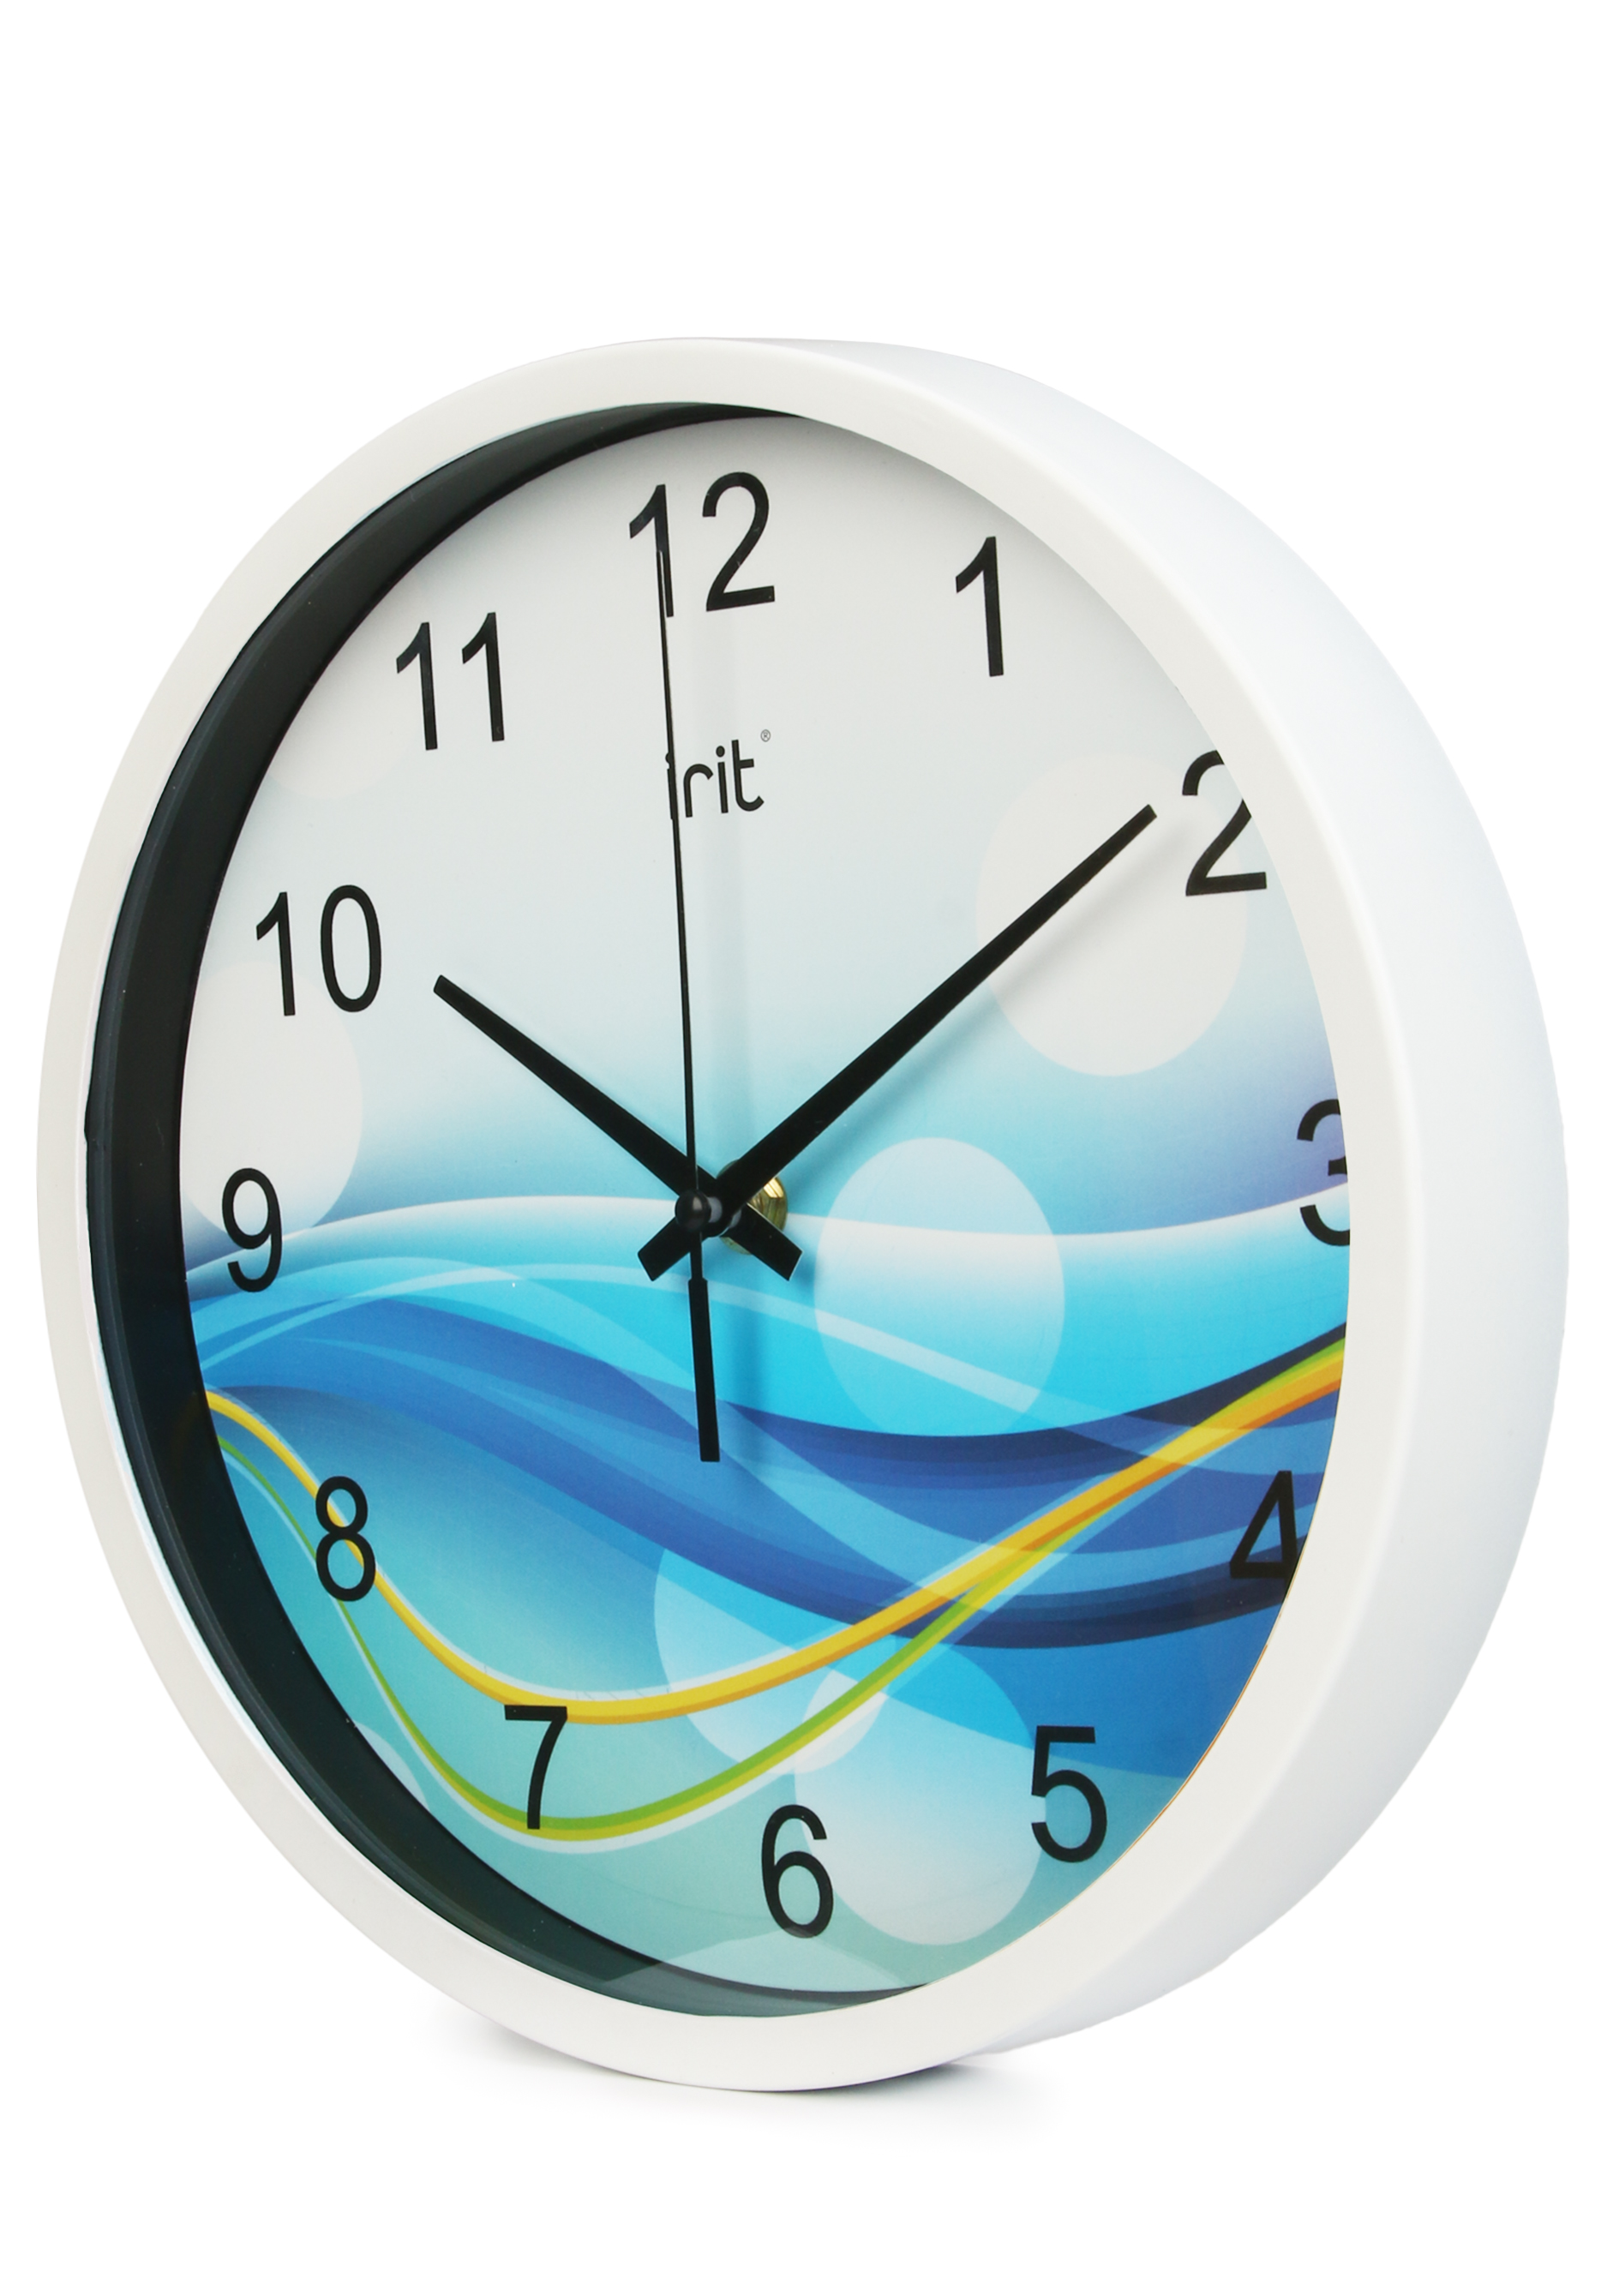 Круглые настенные часы IRIT, цвет голубой, размер 25 см - фото 10